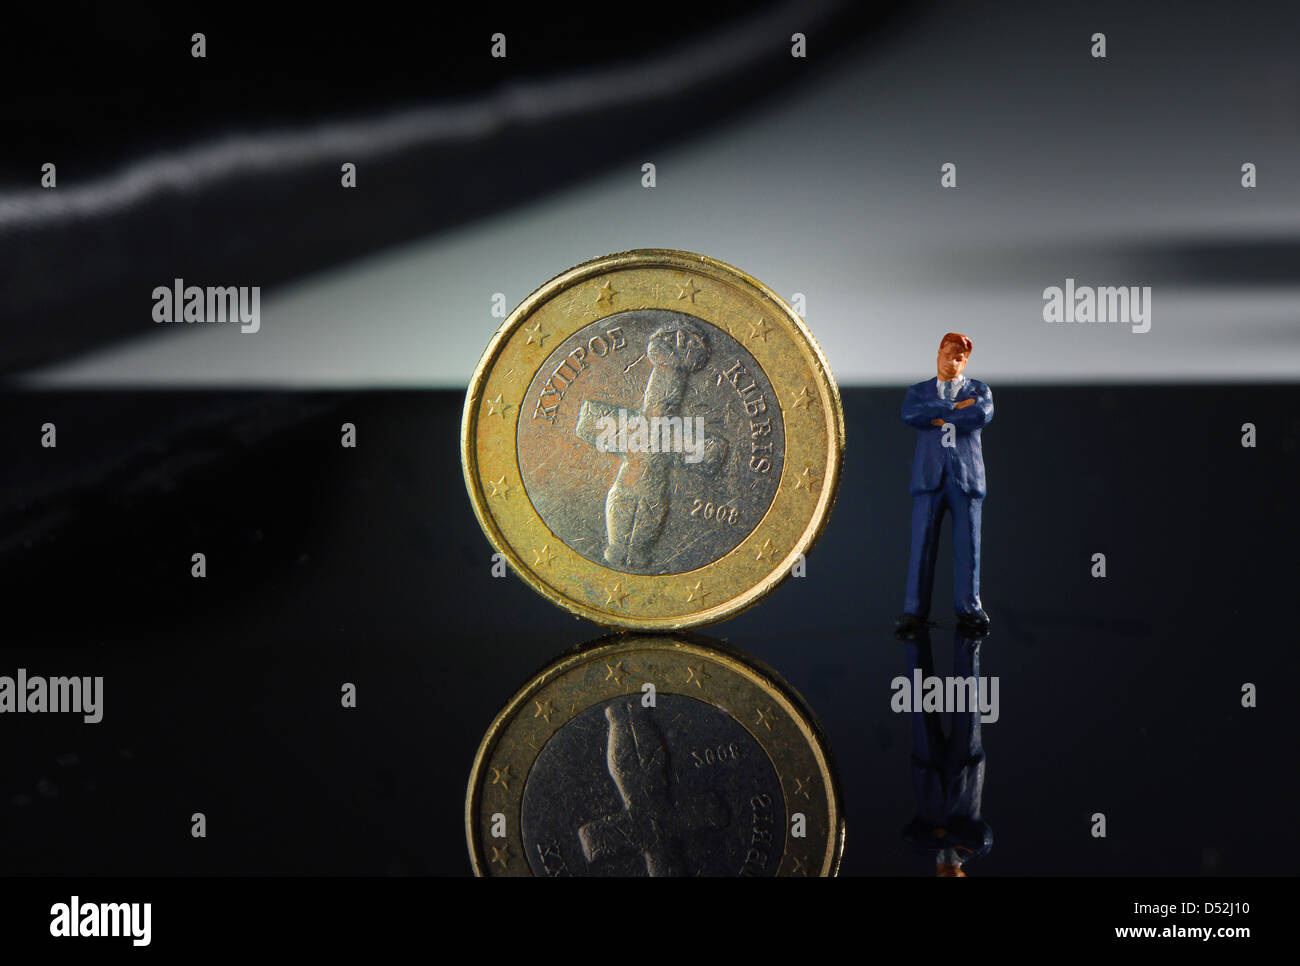 Euro-Münze aus Zypern, Miniatur Figur der Politiker, Banker, Manager oder Geschäftsmann Stockfoto